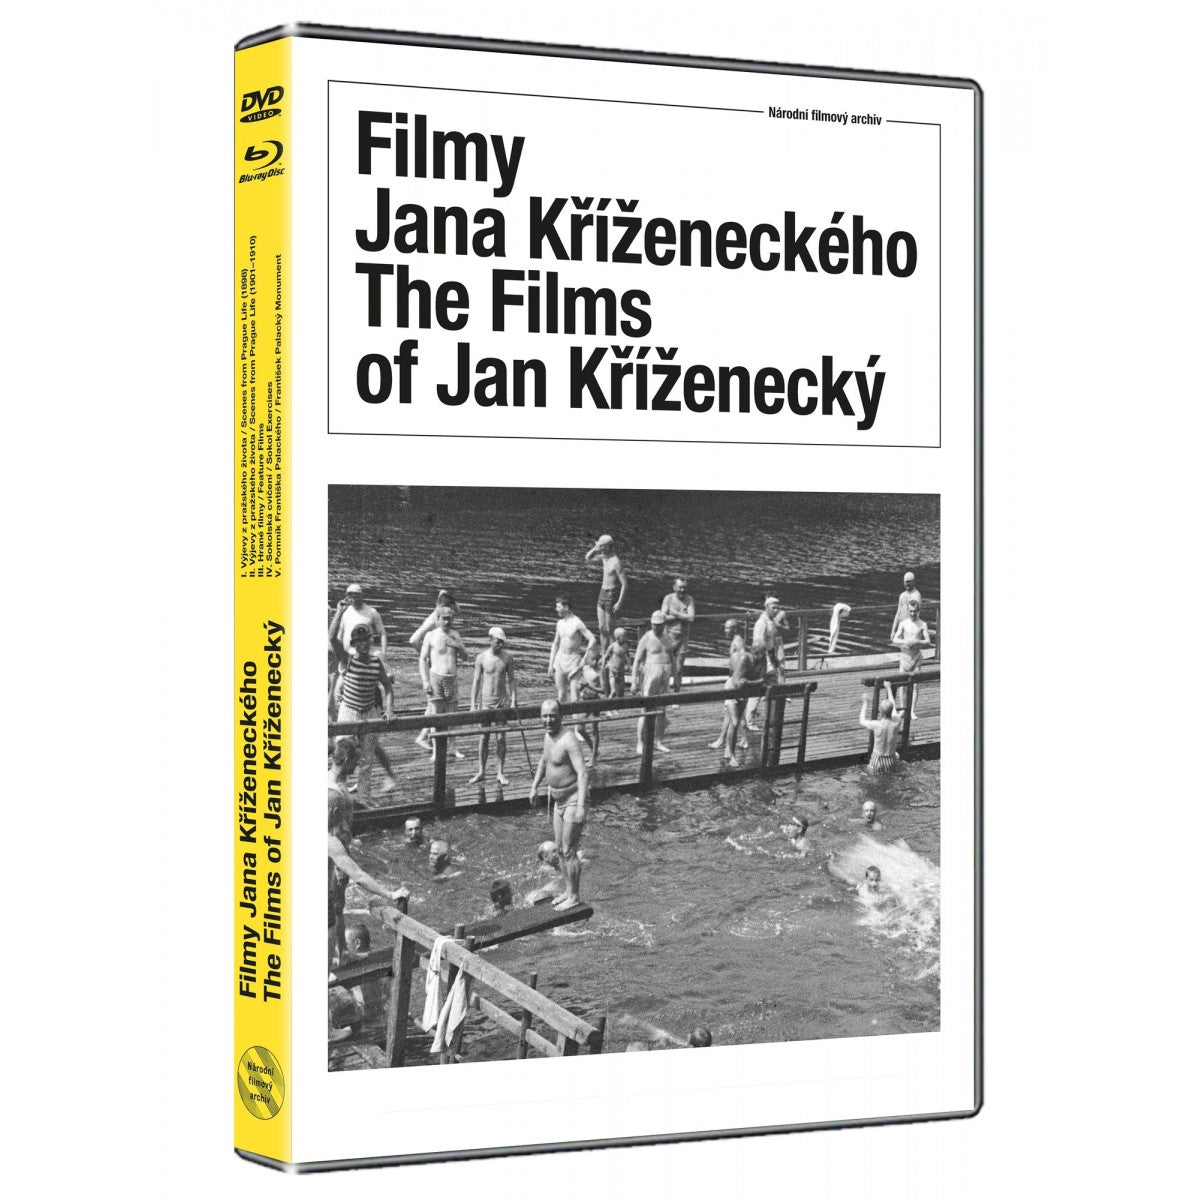 The Films of Jan Krizenecky / Filmy Jana Krizeneckeho DVD+BD